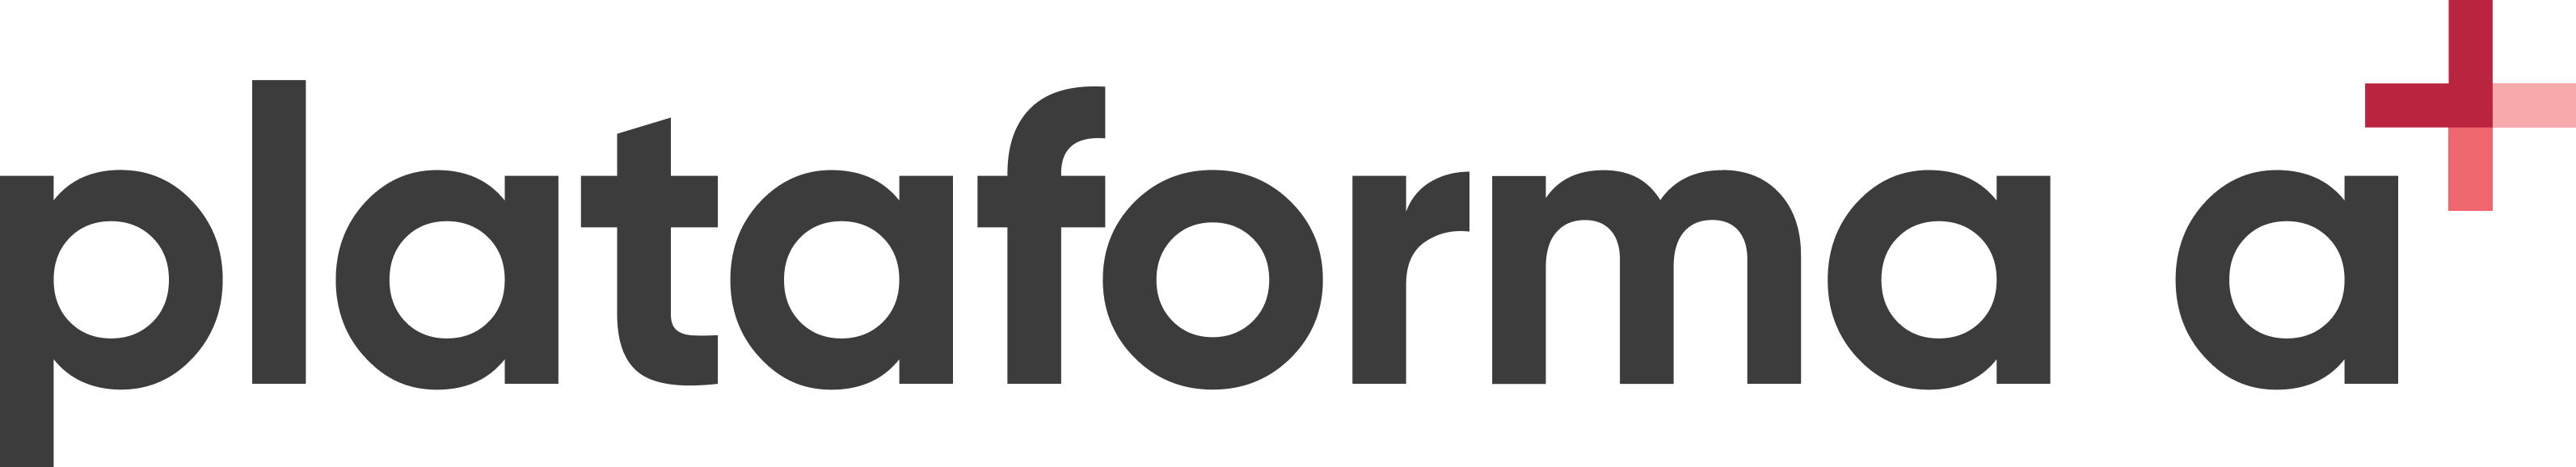 Logo plataforma oficial